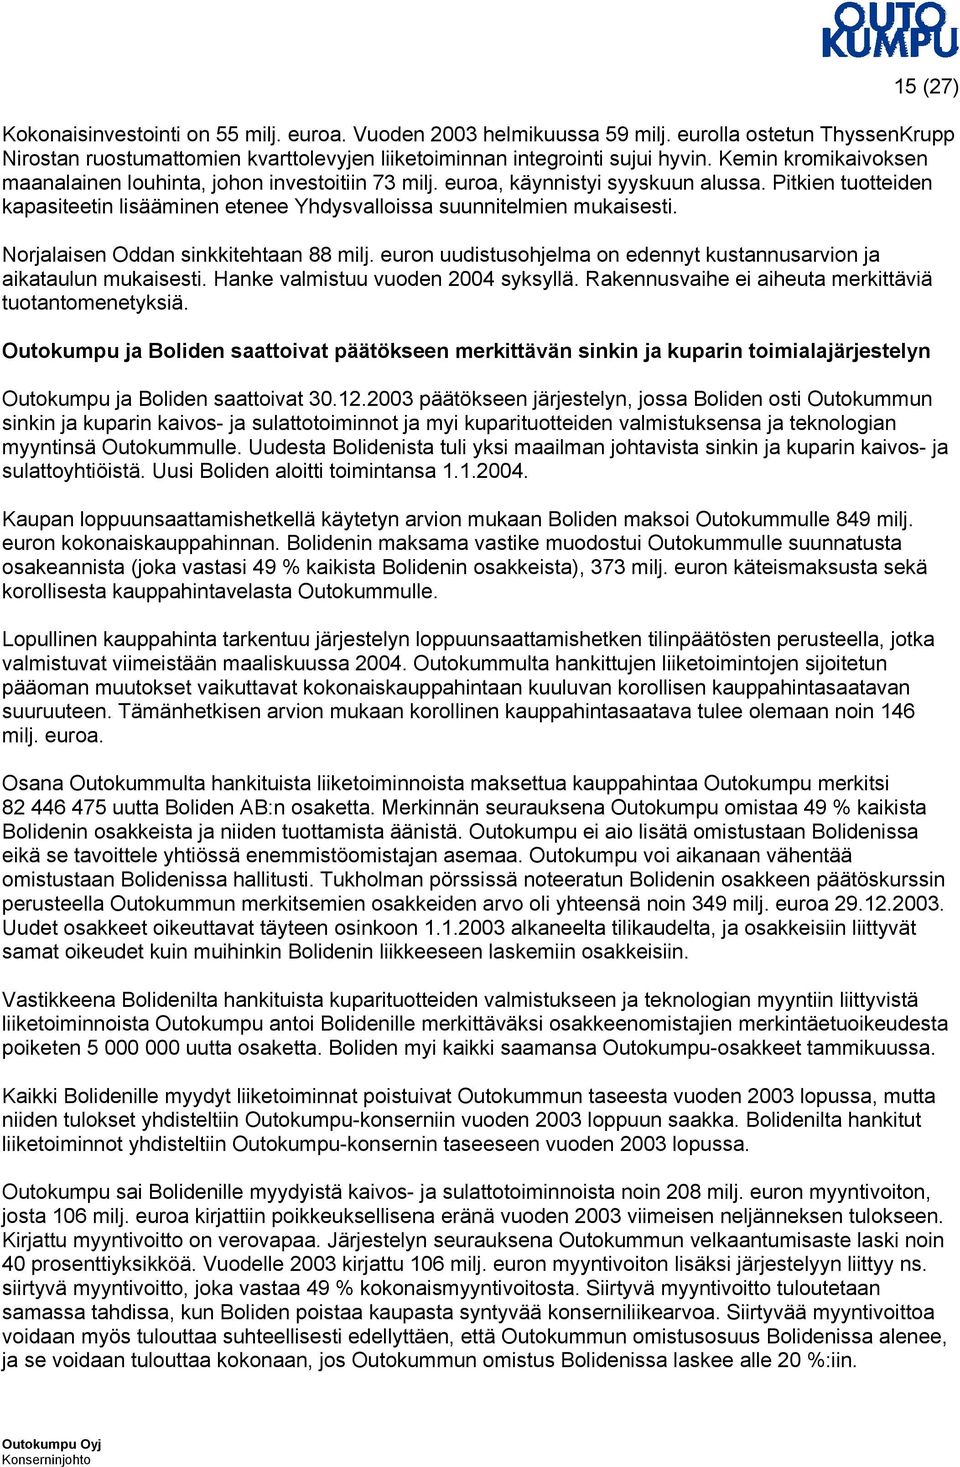 Norjalaisen Oddan sinkkitehtaan 88 milj. euron uudistusohjelma on edennyt kustannusarvion ja aikataulun mukaisesti. Hanke valmistuu vuoden 2004 syksyllä.